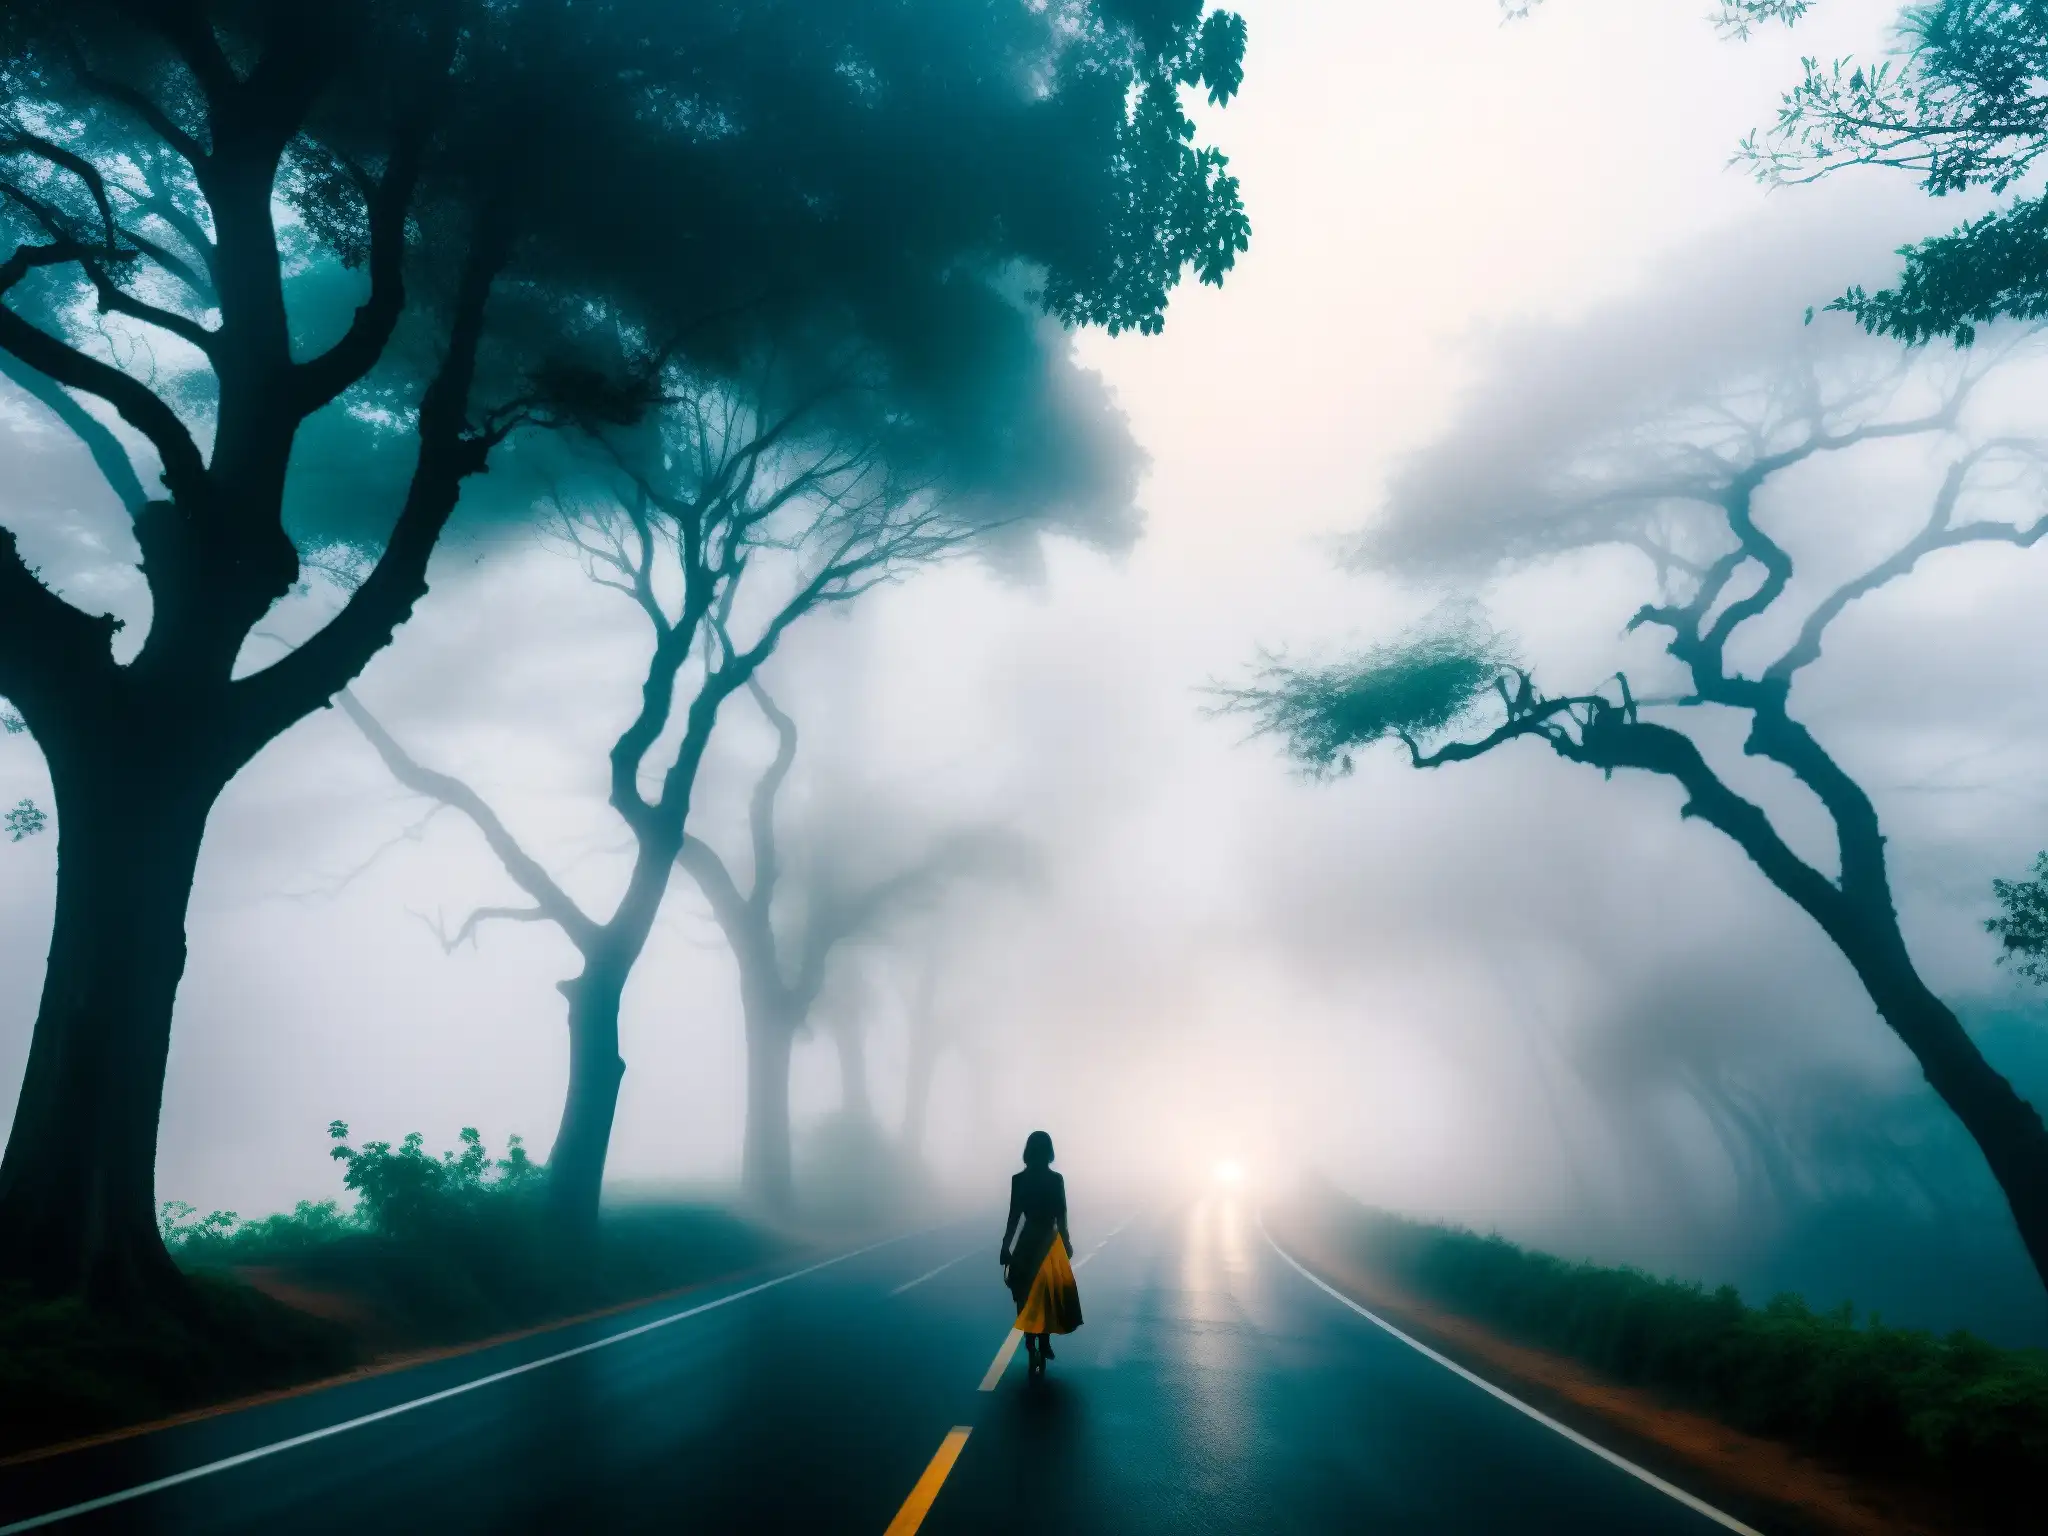 Silueta de mujer en la neblina en una carretera de Bengaluru, con árboles tenebrosos y apariciones misteriosas